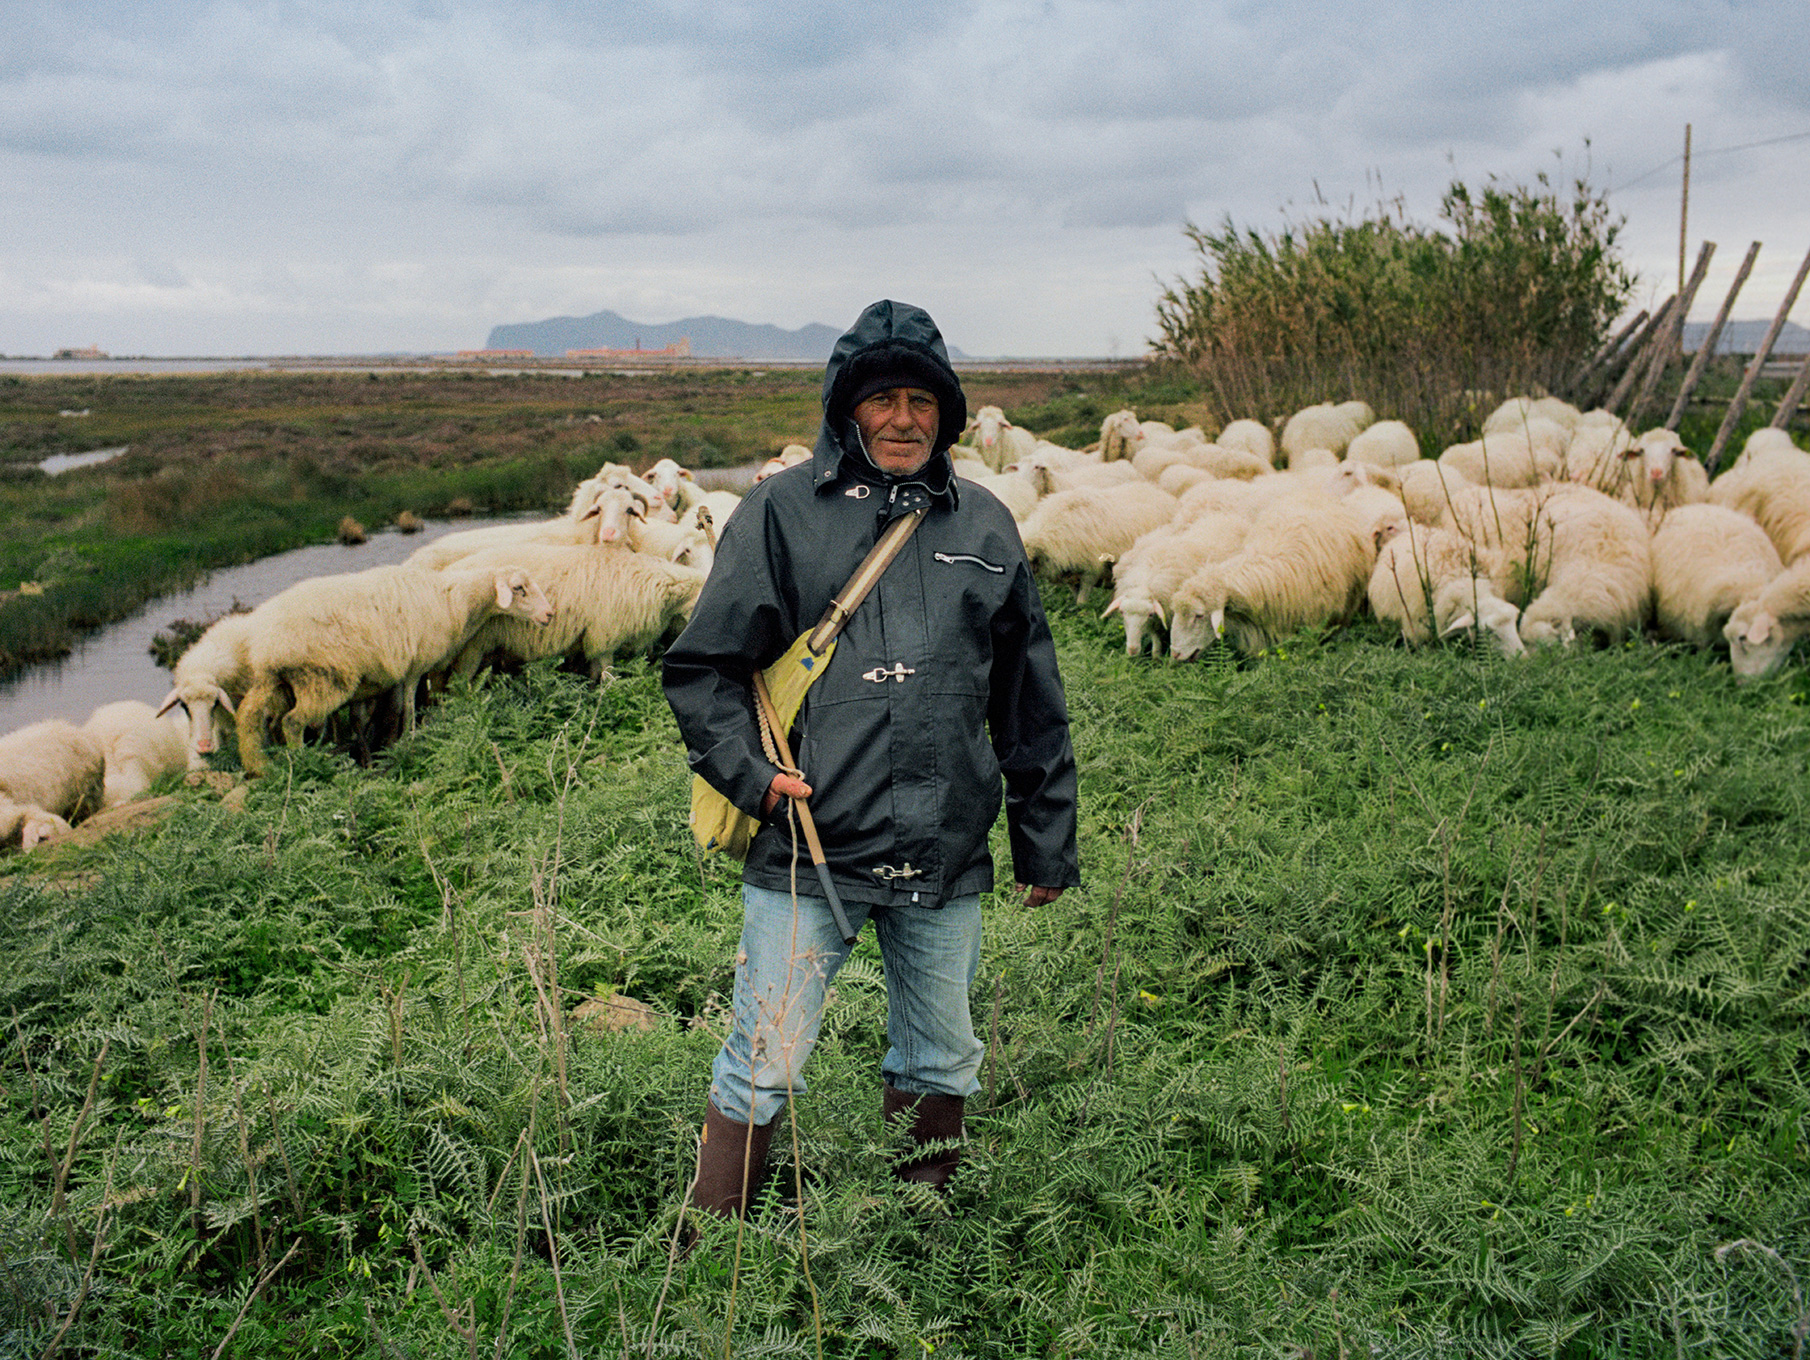   Giovanni the shepherd,  Piscitello, 2019  